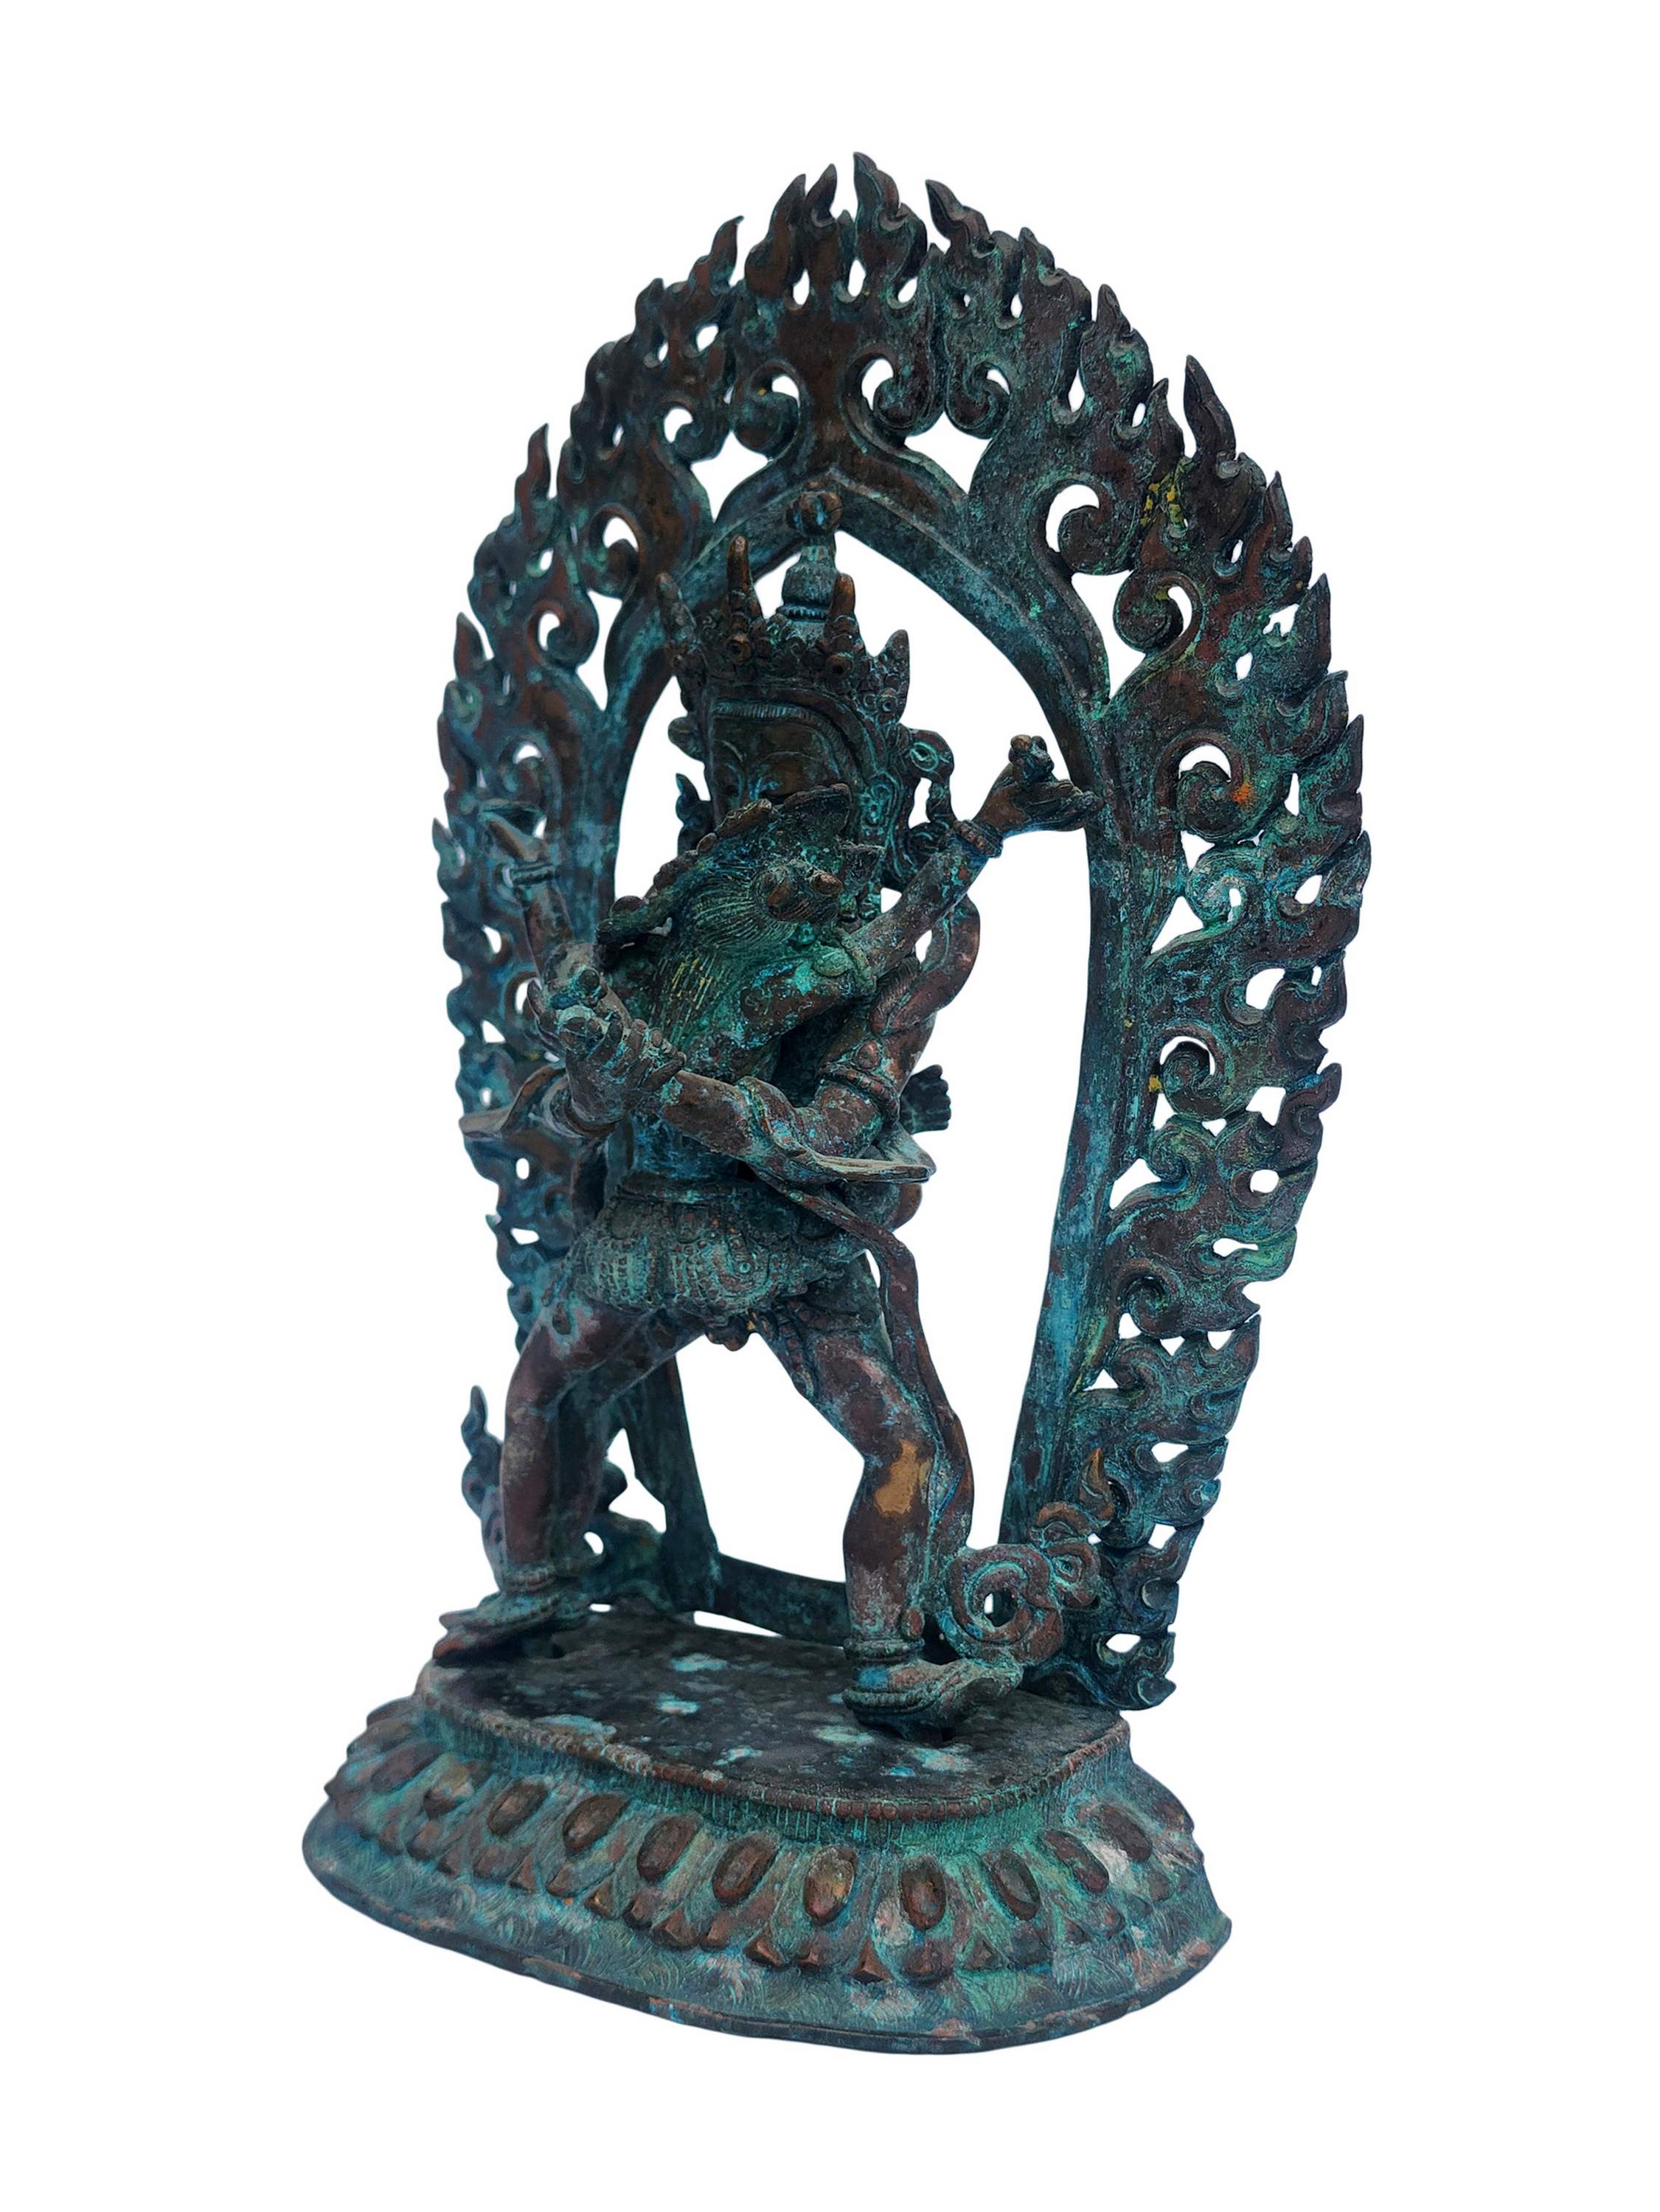 Chakrasamvara, Buddhist Handmade Statue, antique Finishing